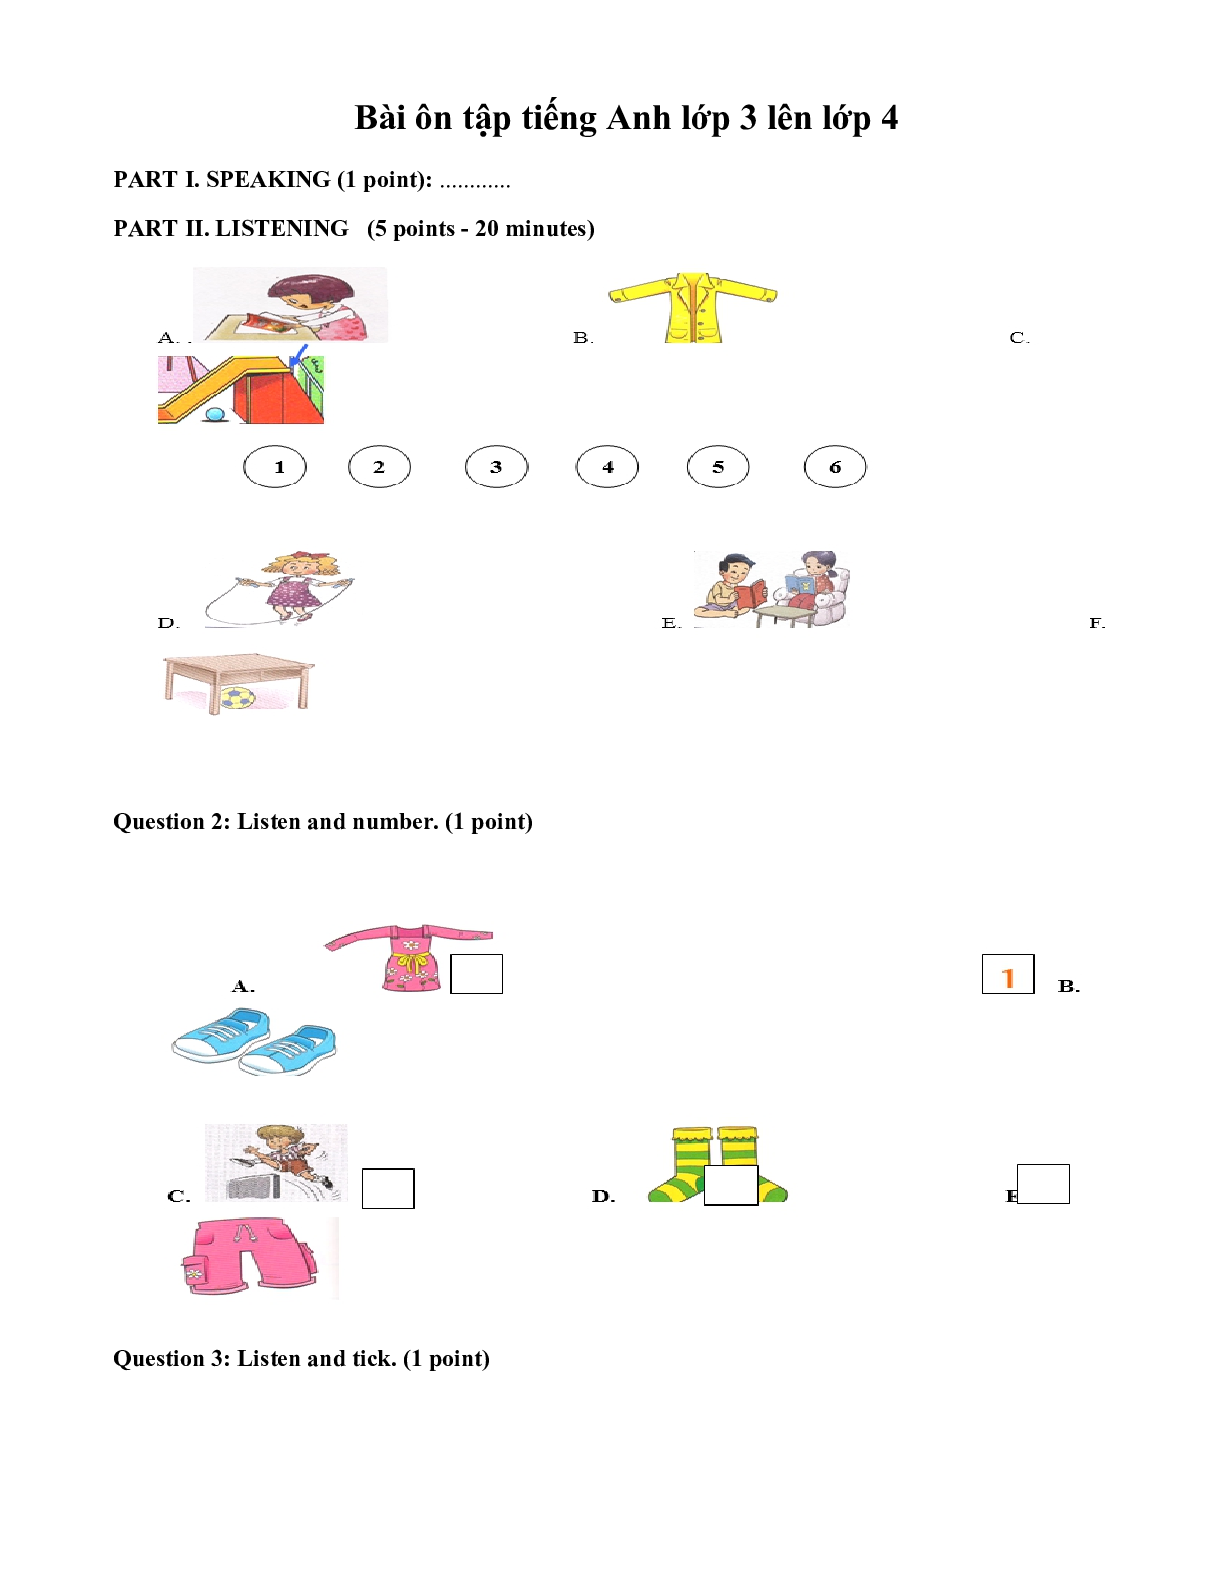 Bài tập ôn hè môn Tiếng Anh lớp 3 lên lớp 4 (trang 1)